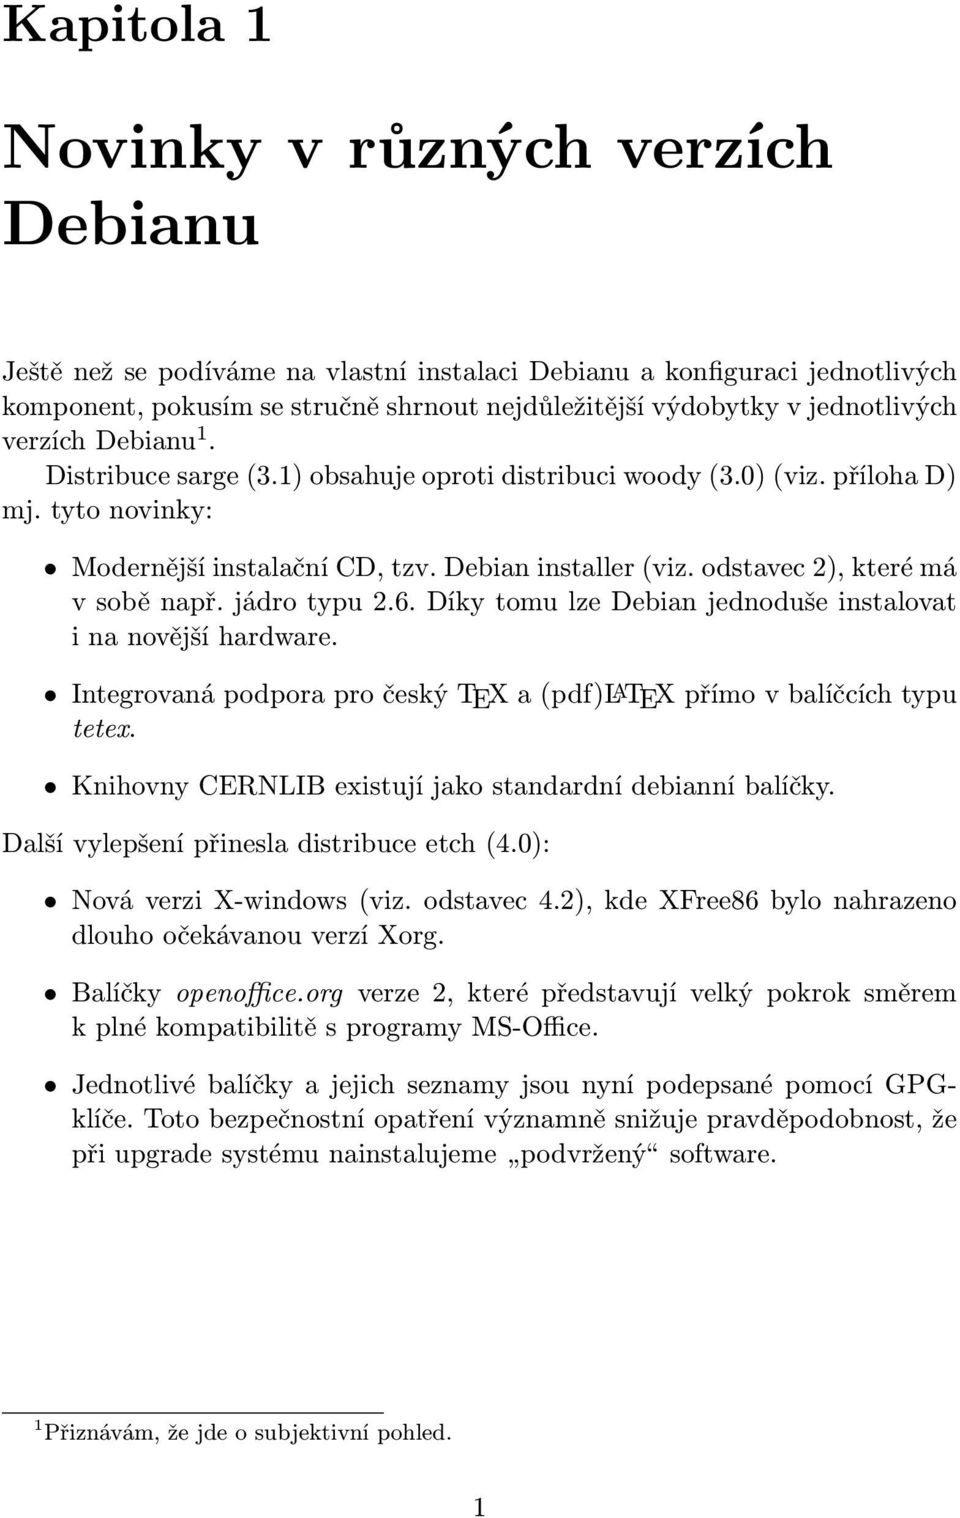 odstavec 2), které má v sobě např. jádro typu 2.6. Díky tomu lze Debian jednoduše instalovat i na novější hardware. Integrovaná podpora pro český TEX a (pdf)latex přímo v balíčcích typu tetex.